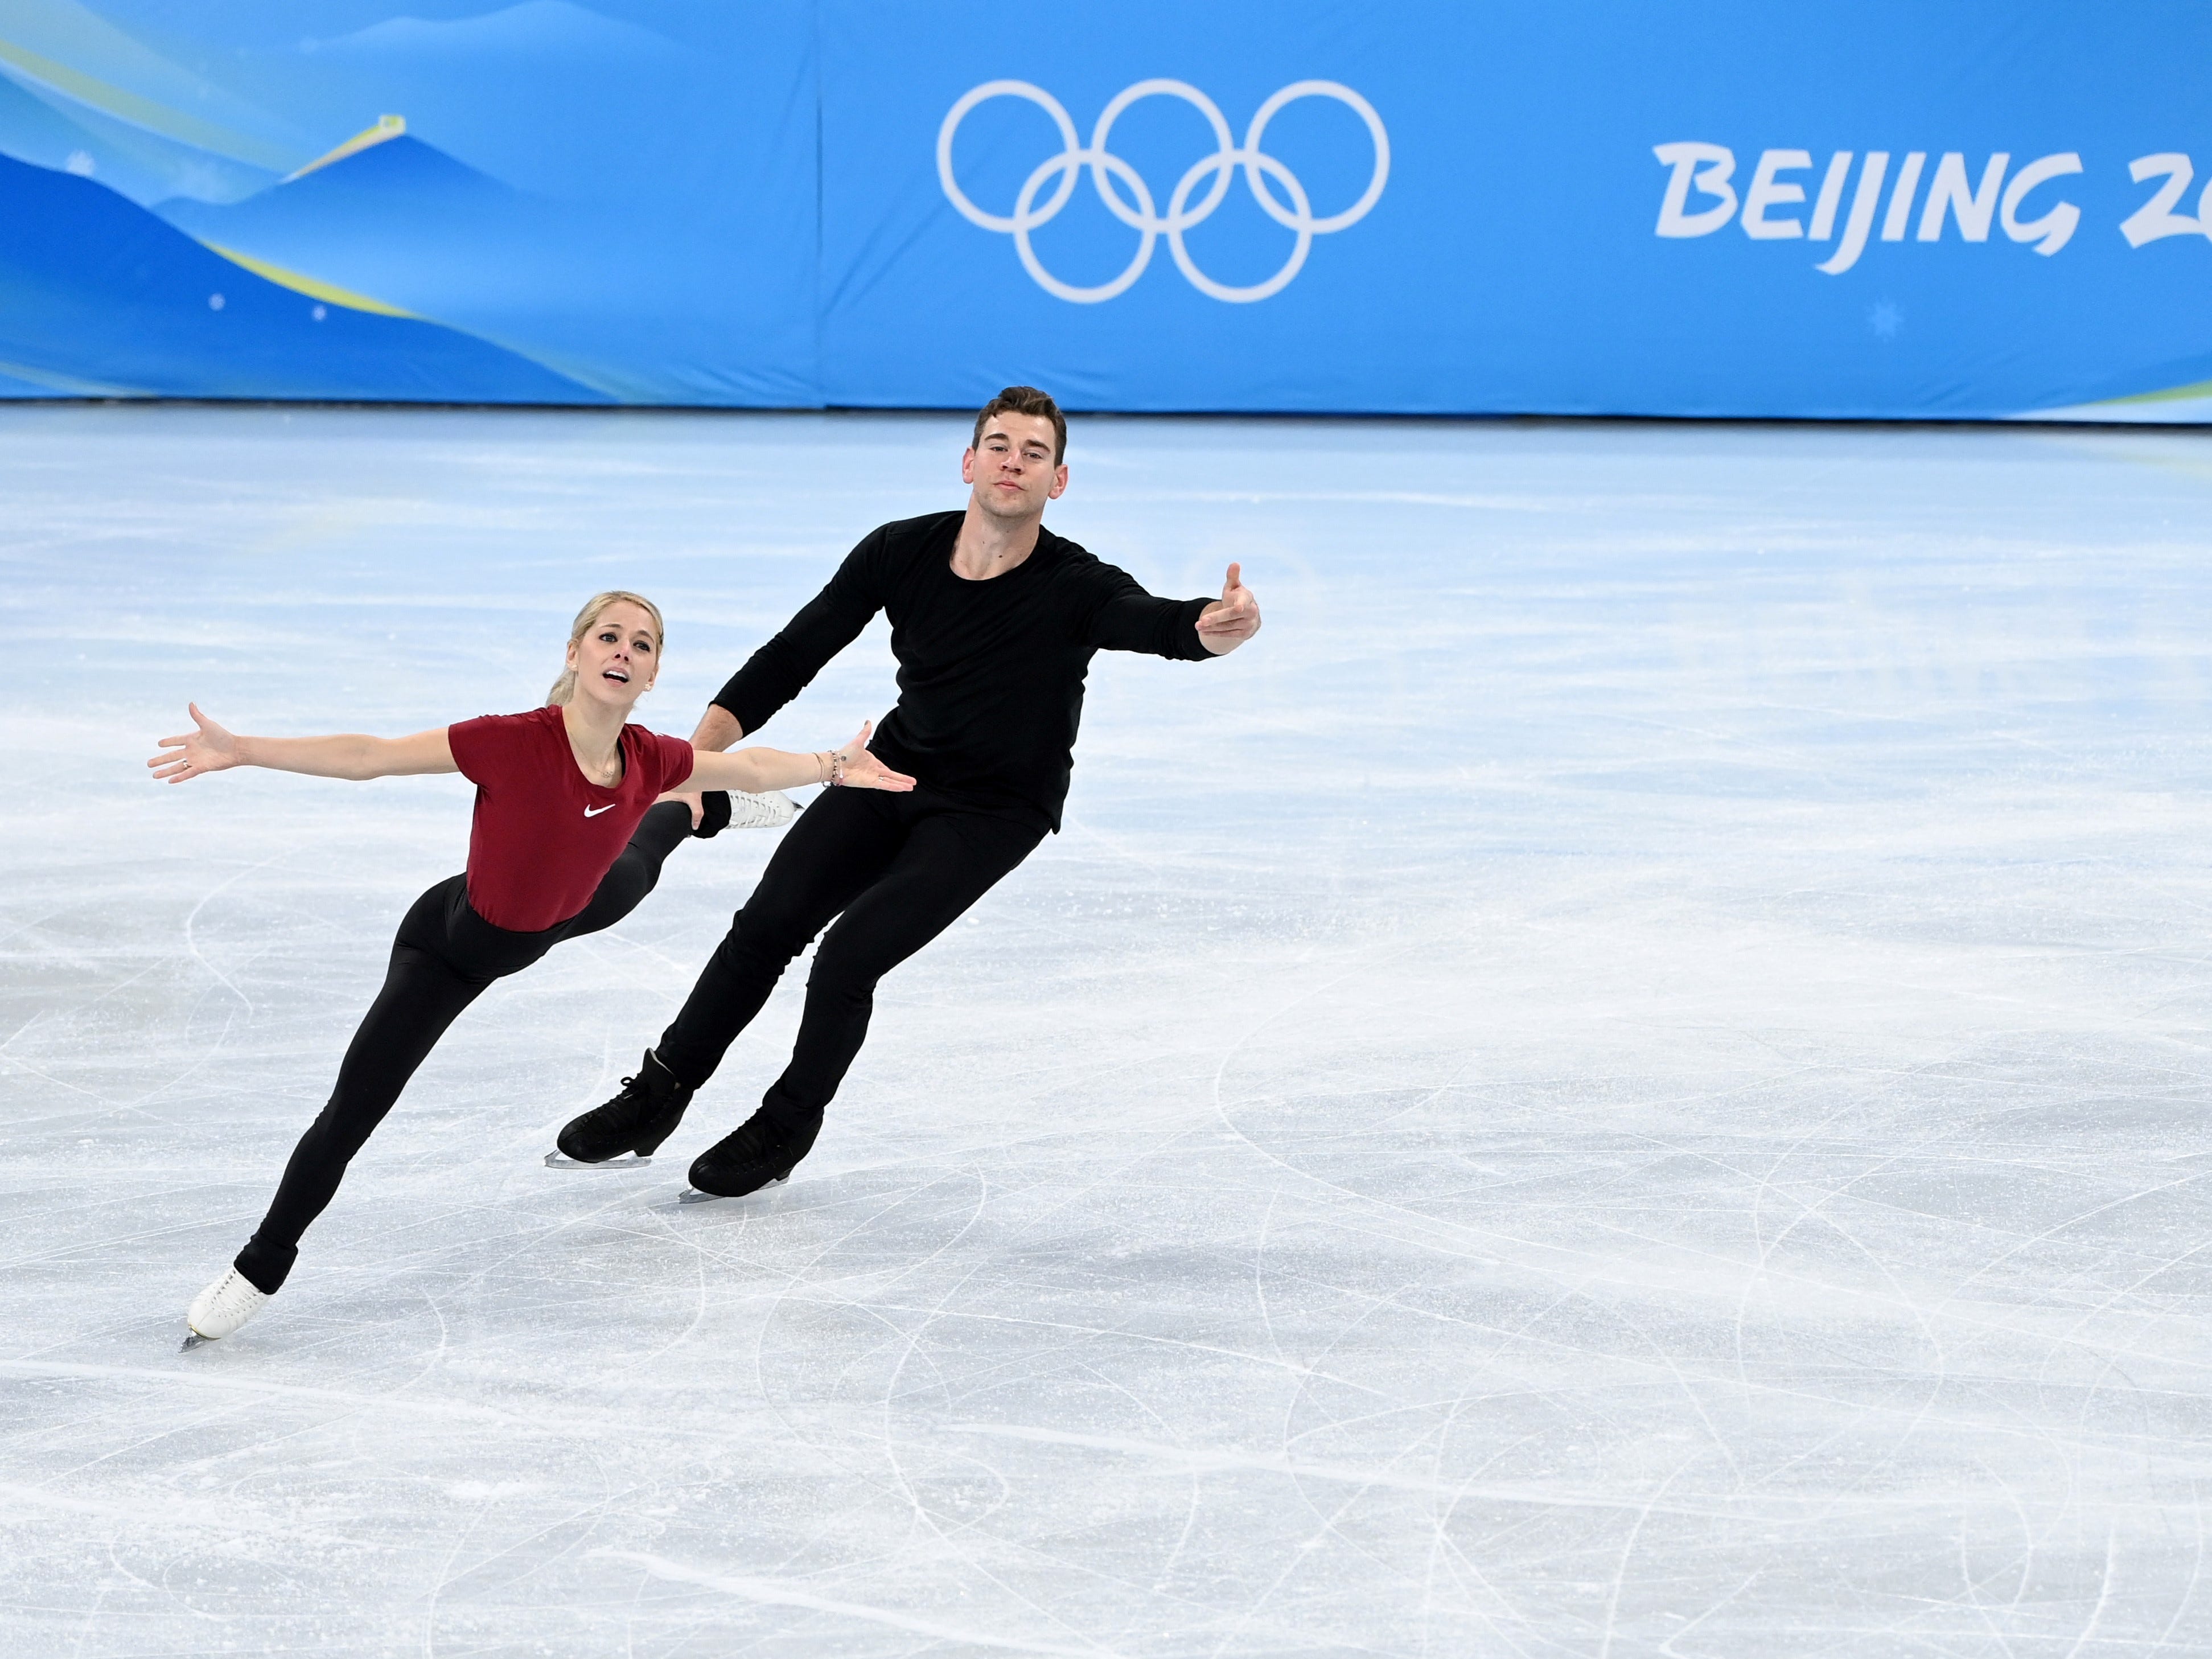 Das Eiskunstlaufpaar Alexa Knierim und Brandon Frazier vom Team USA trainieren vor den Olympischen Winterspielen auf dem Eis